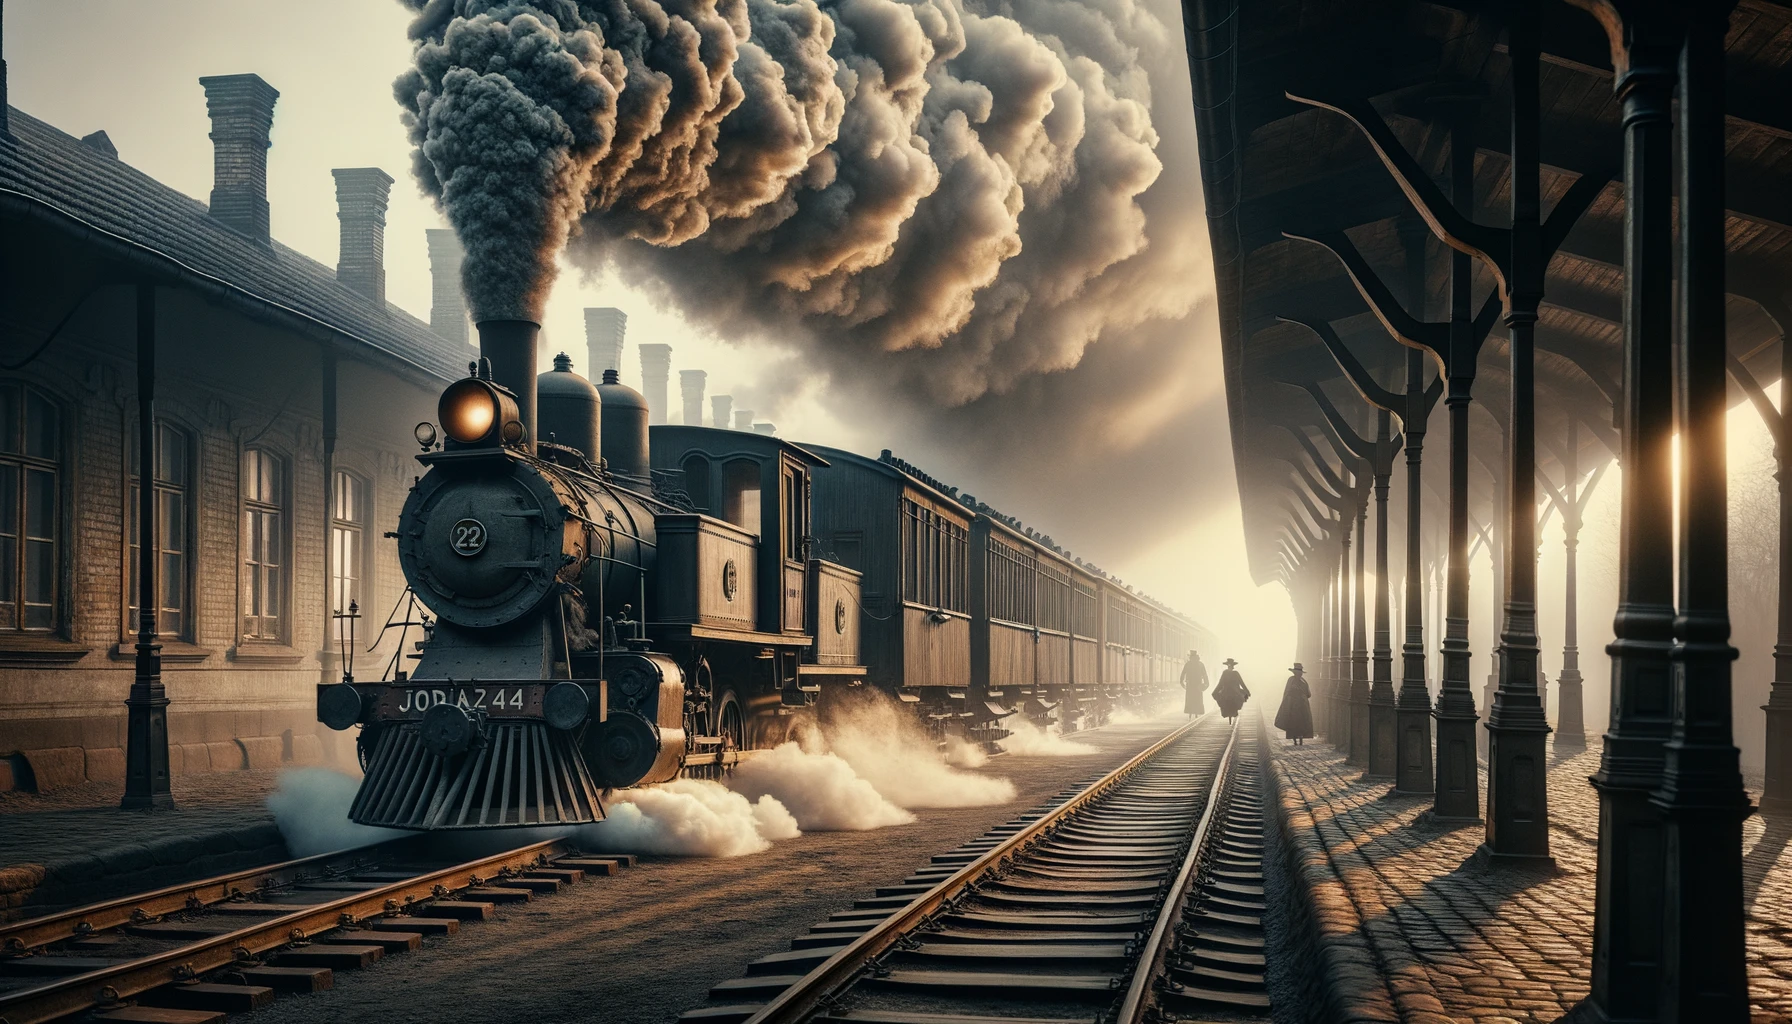 Una foto orizzontale e fotorealistica di un treno a vapore di epoca vittoriana fermo in una stazione con passeggeri in costumi storici in attesa di salire sulle carrozze